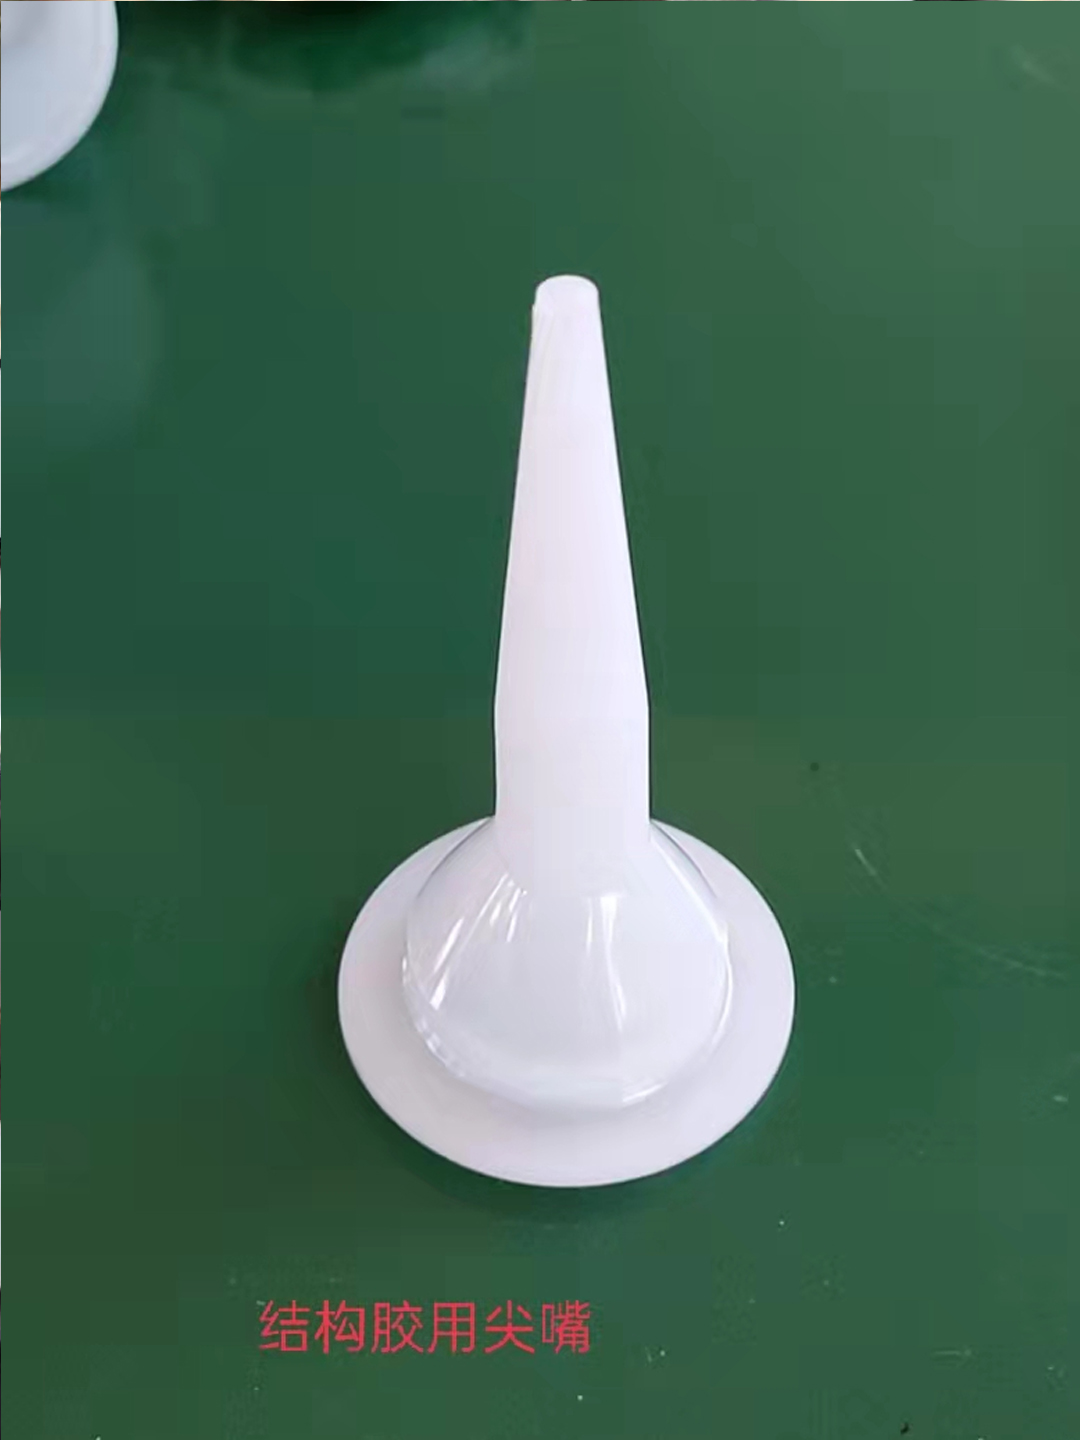 玻璃胶嘴的使用方法和主要用途